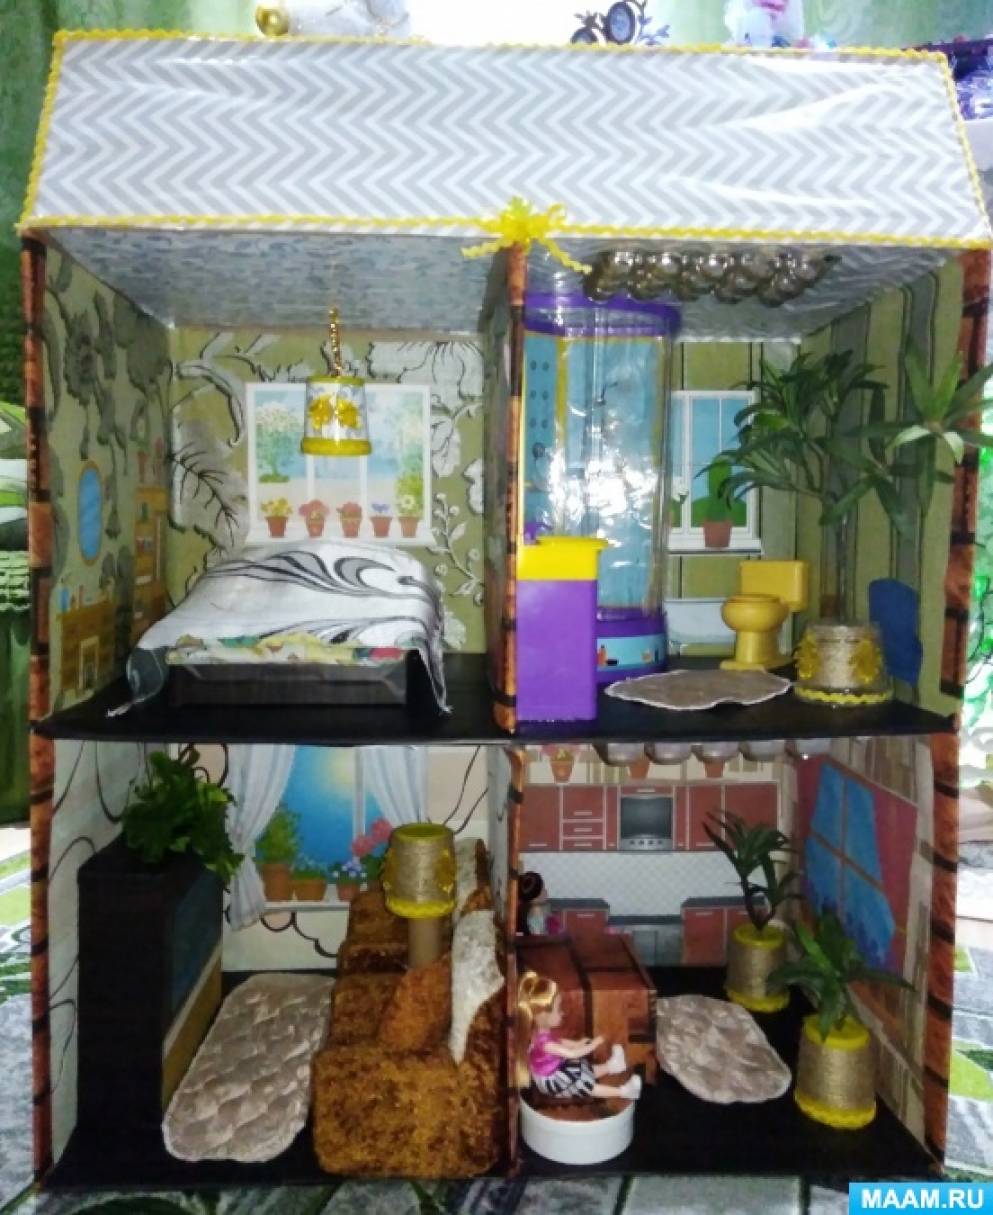 Видео мастер-класс: кукольный домик в миниатюре. Часть 1